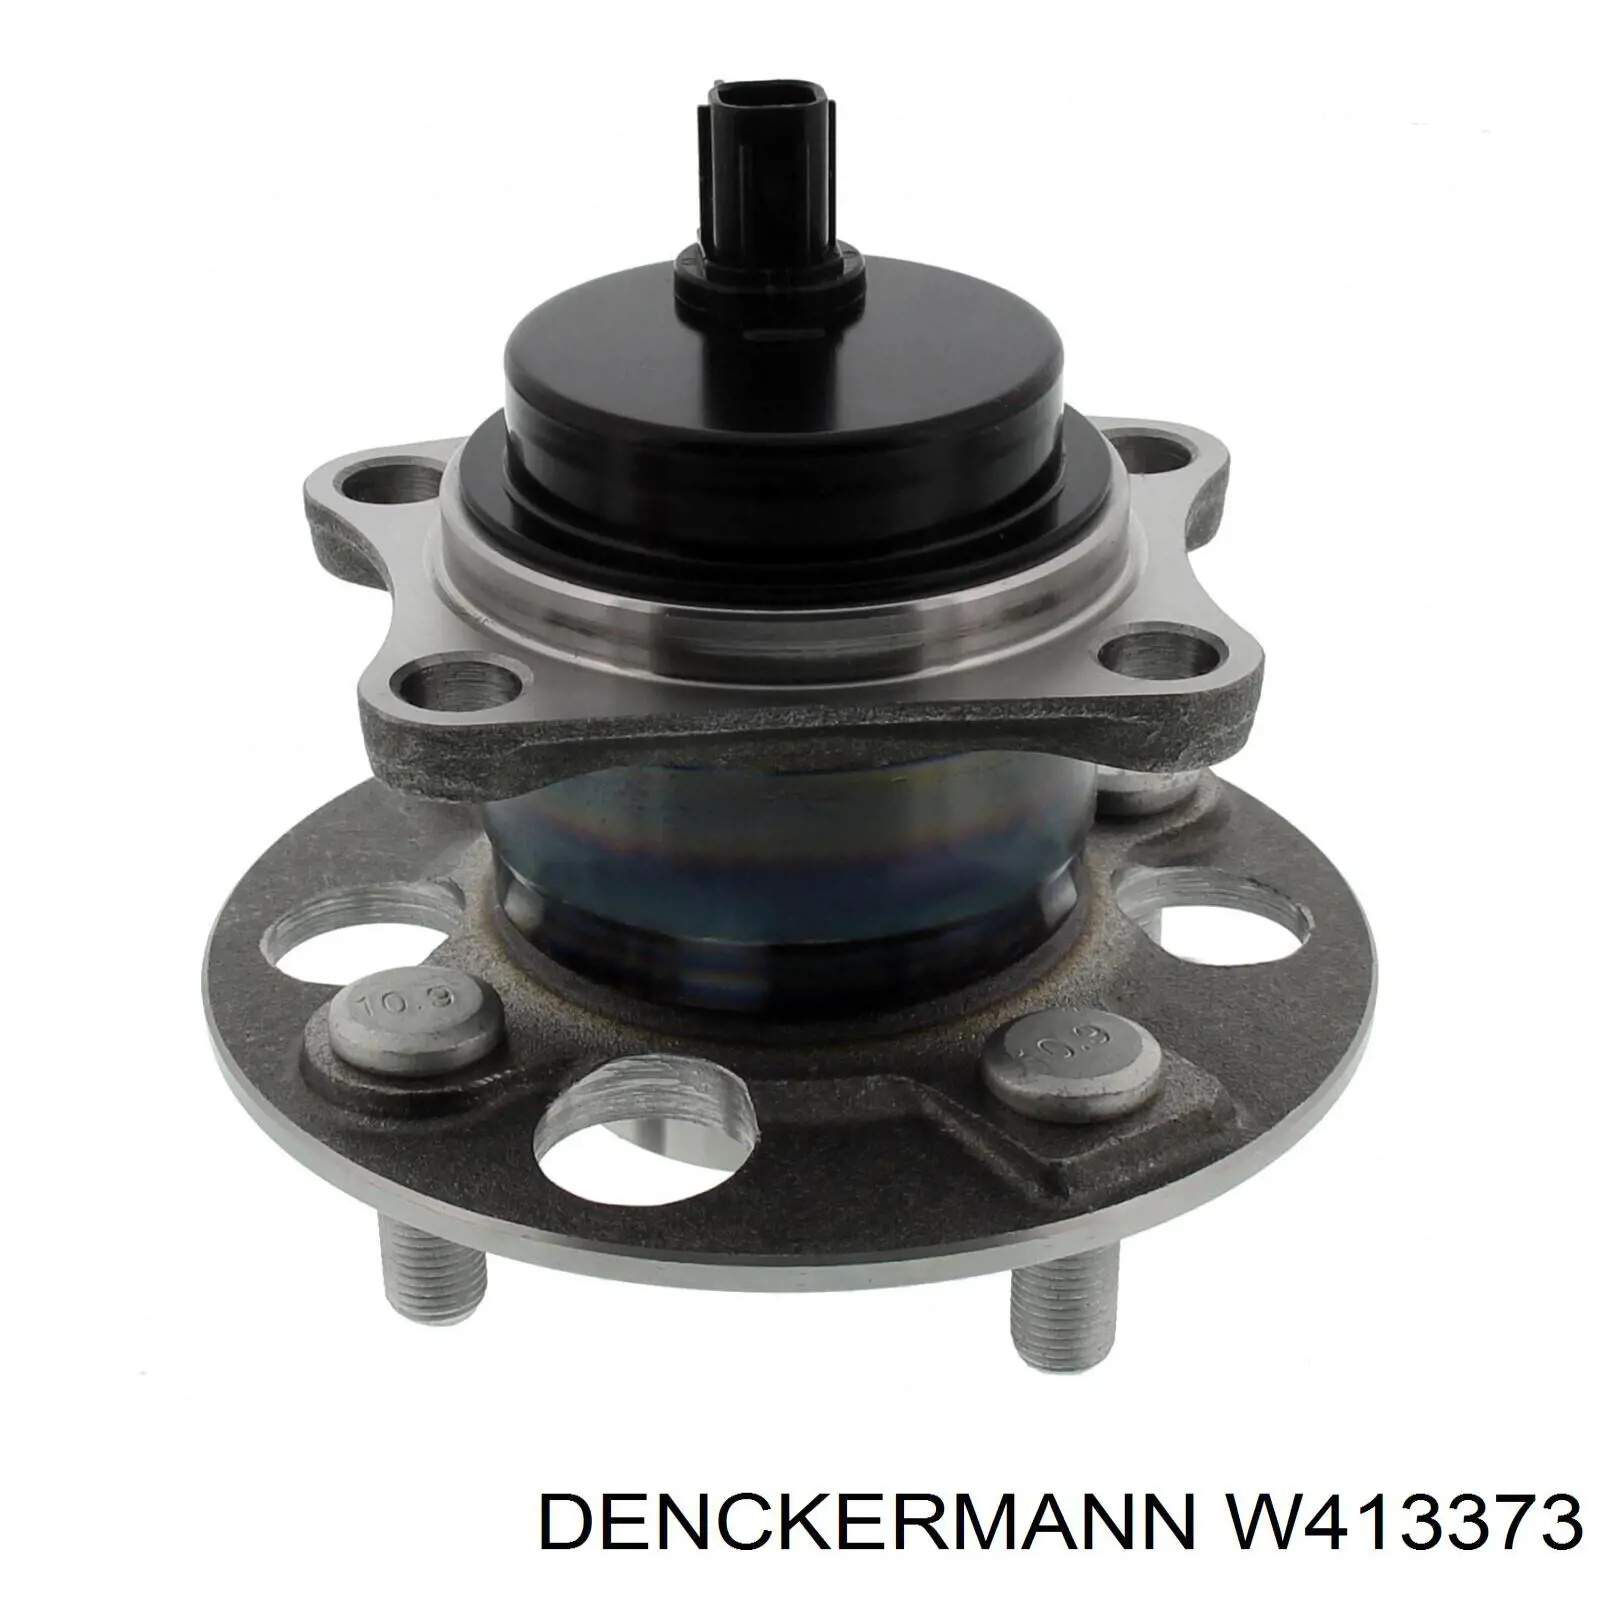 W413373 Denckermann cubo de rueda trasero